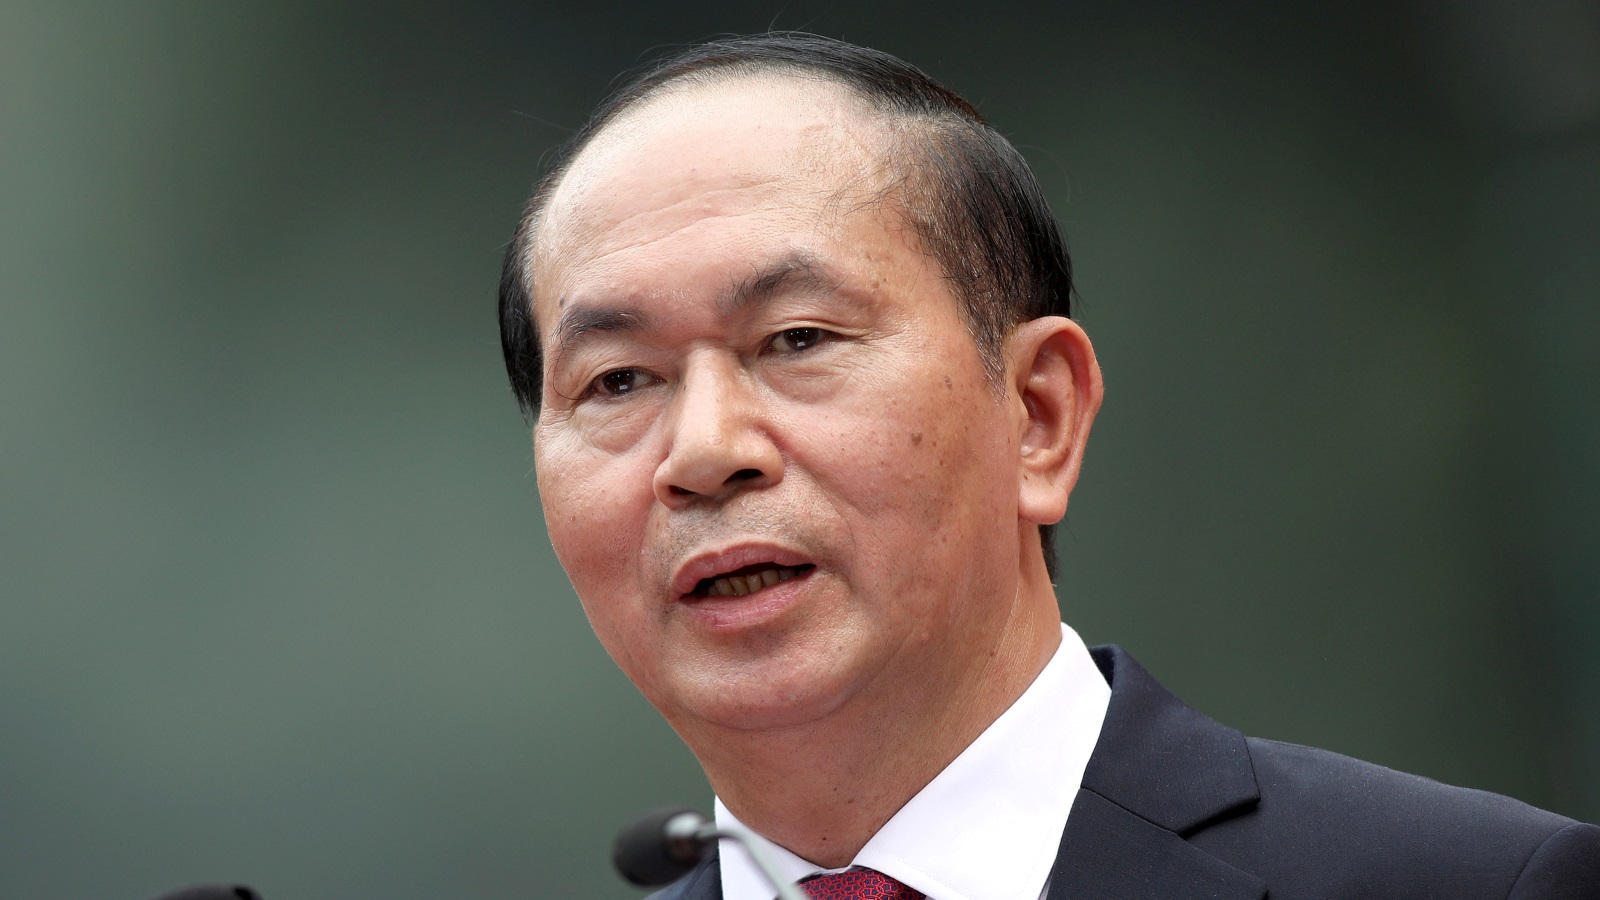 ‪كوانغ:‬ كوانغ: نؤمن بحل النزاعات في بحر جنوب الصين عبر التفاوض السلمي وعلى أساس القوانين (رويترز)